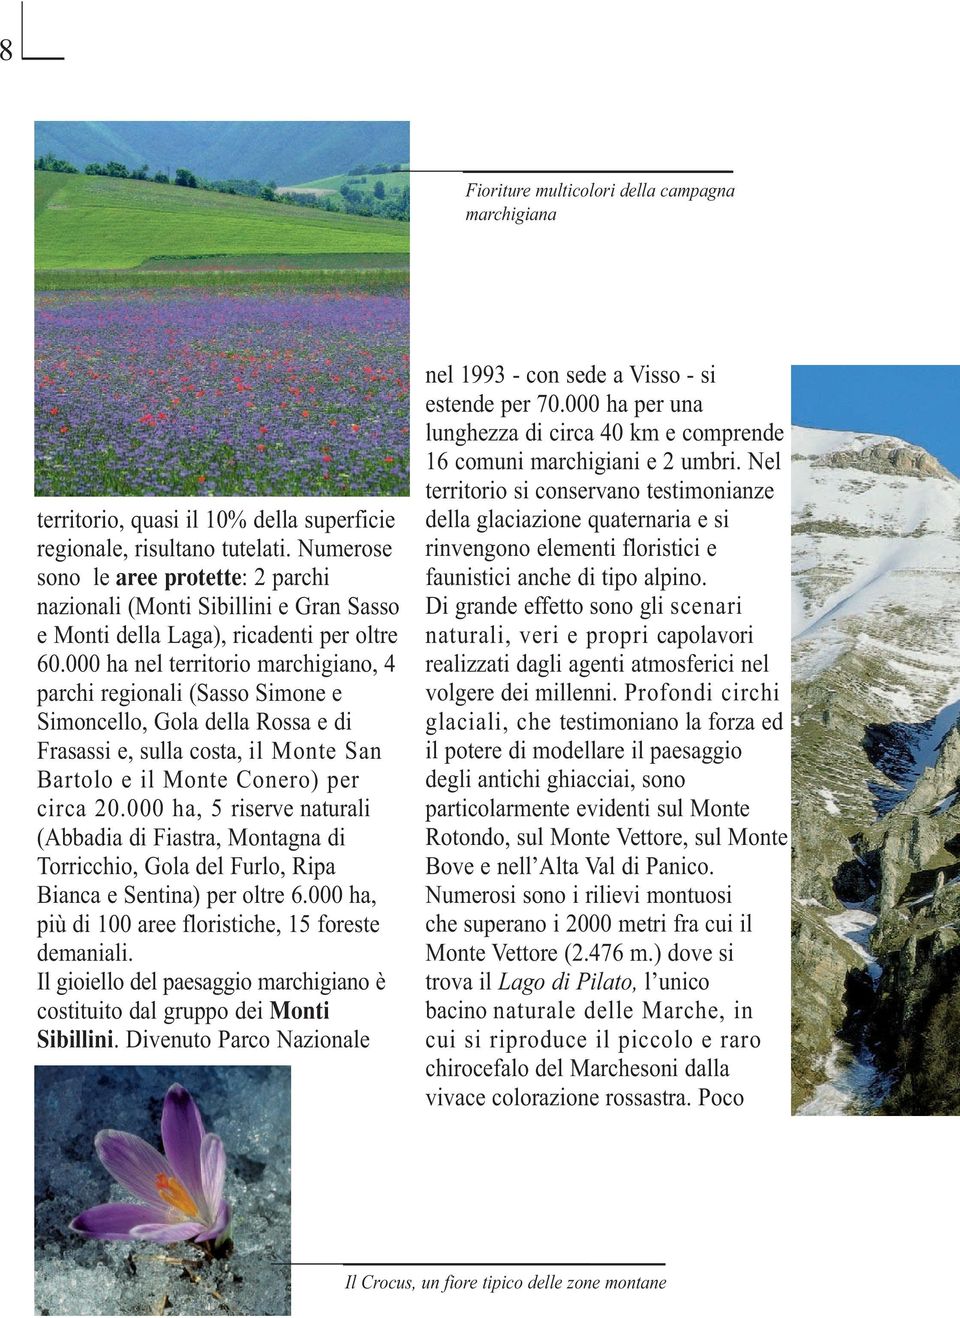 000 ha nel territorio marchigiano, 4 parchi regionali (Sasso Simone e Simoncello, Gola della Rossa e di Frasassi e, sulla costa, il Monte San Bartolo e il Monte Conero) per circa 20.